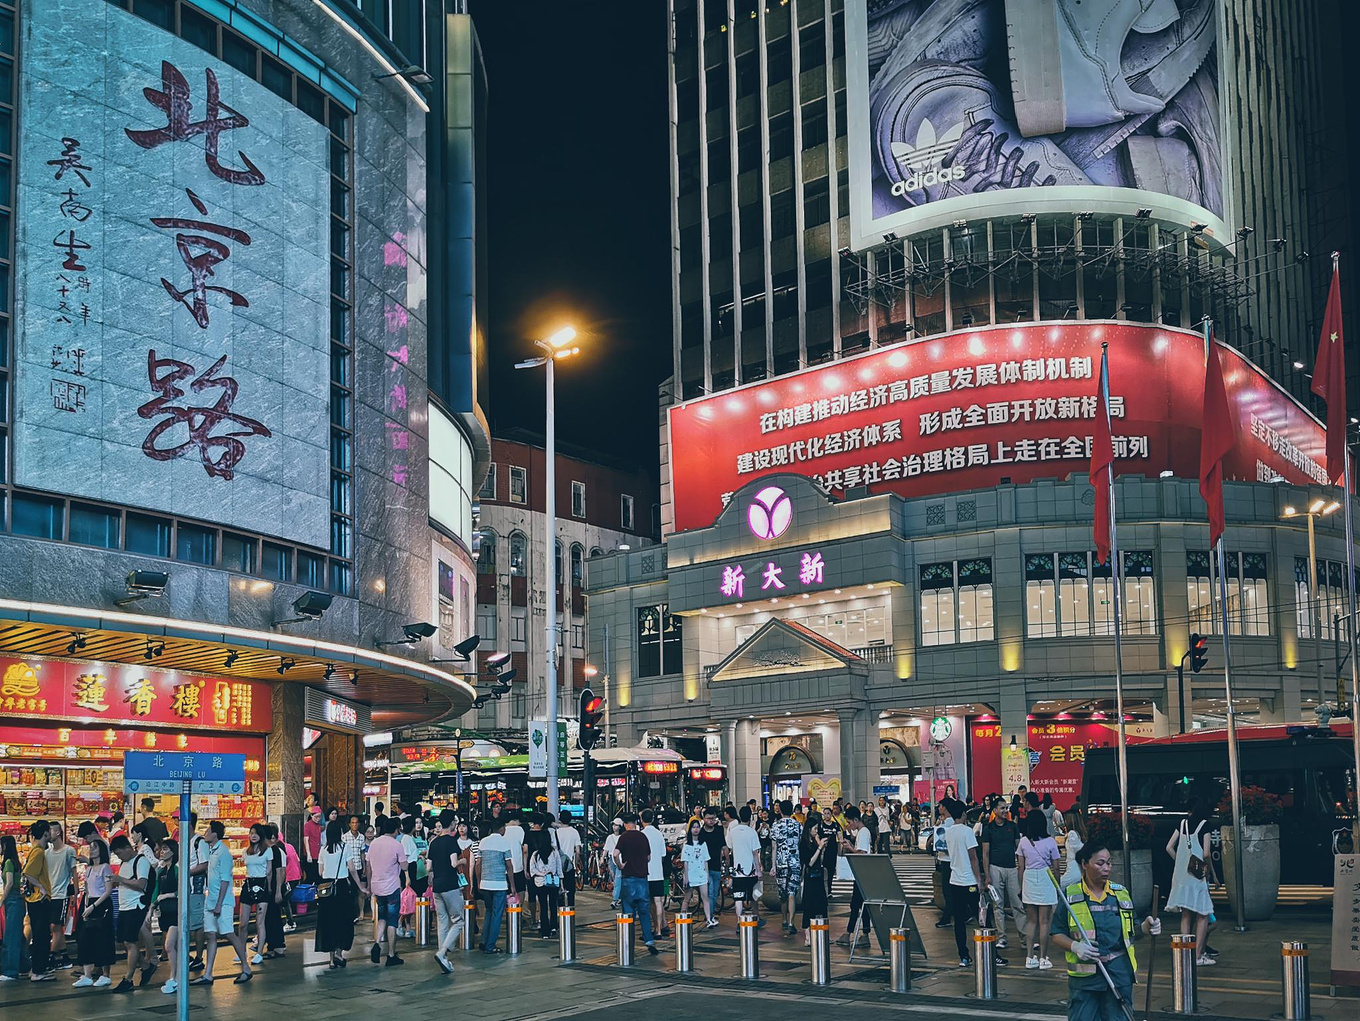 【携程攻略】广州北京路步行街景点,北京路步行街是广州出名的步行街，是广州有史以来最繁华的商业中心区…